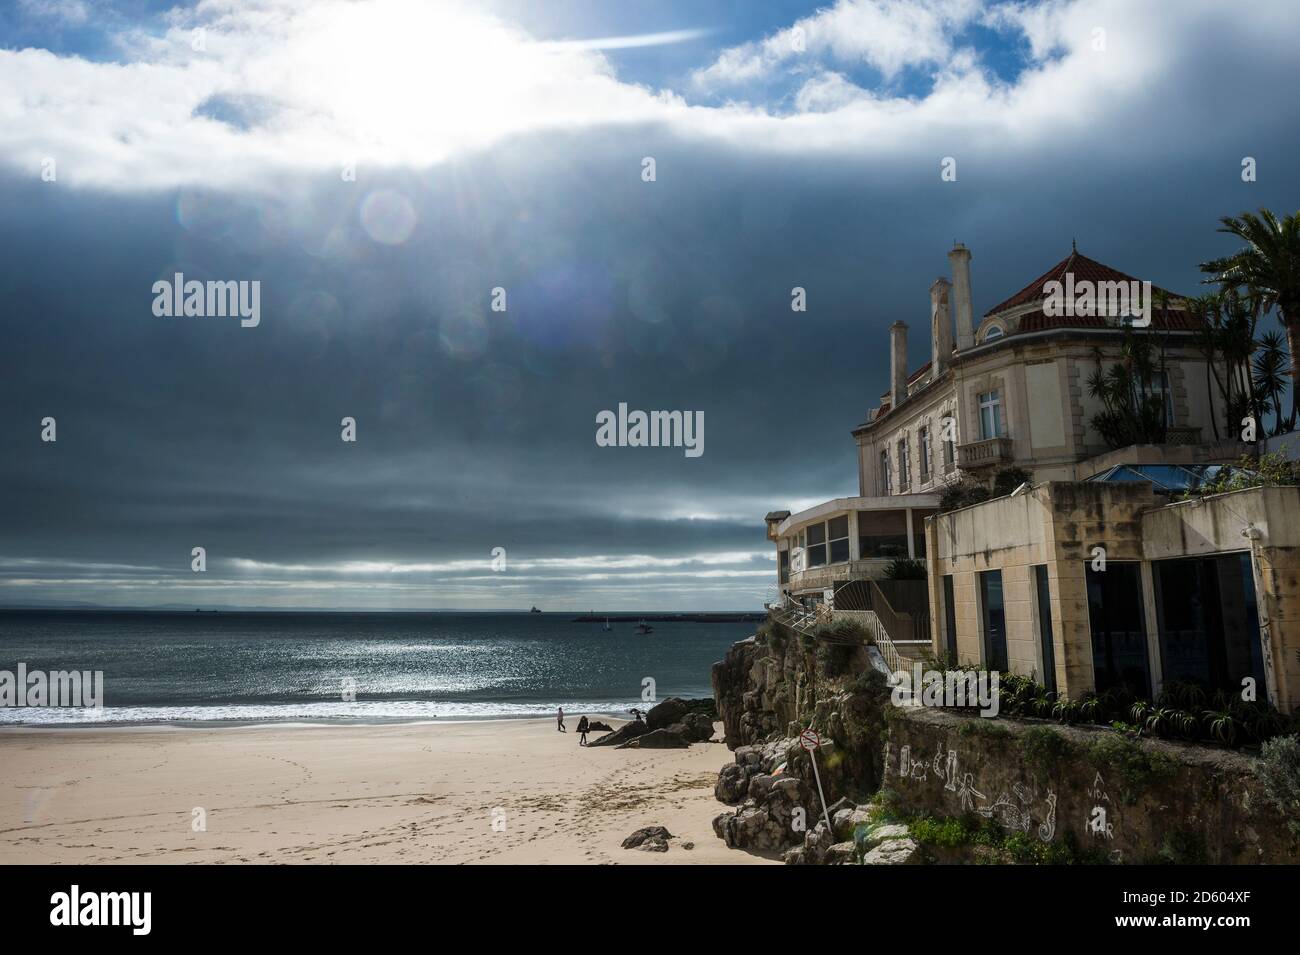 Portugal, Cascais, una luz espectacular sobre la playa y una antigua villa Foto de stock